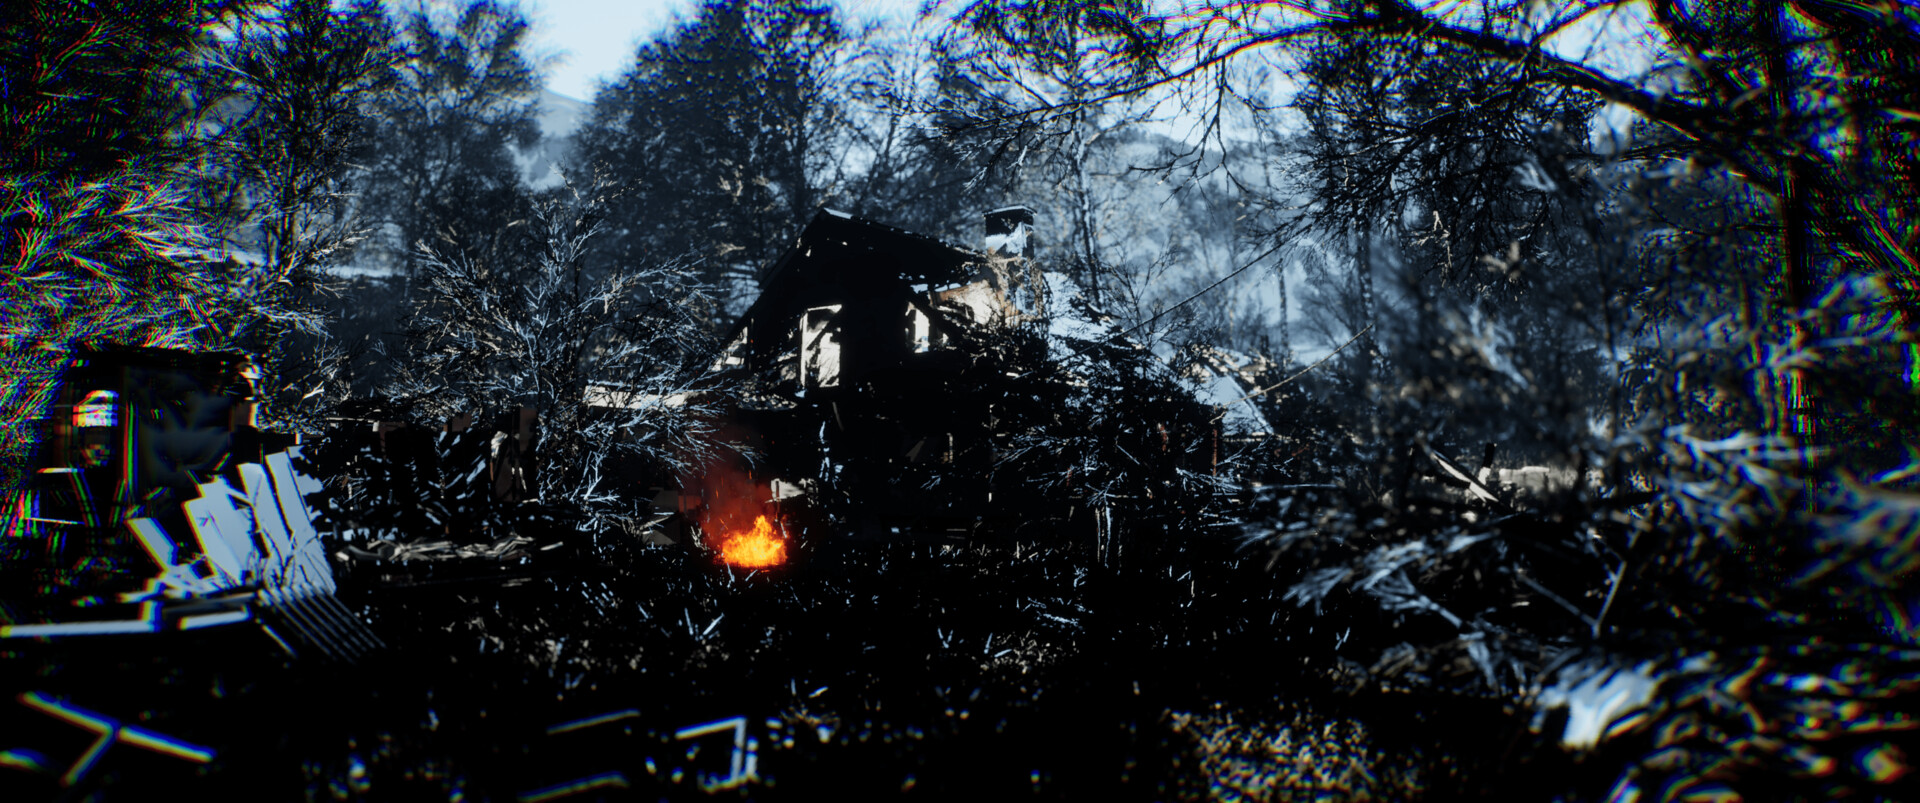 Игрок показал деревню новичков из S.T.A.L.K.E.R. на Unreal Engine 5